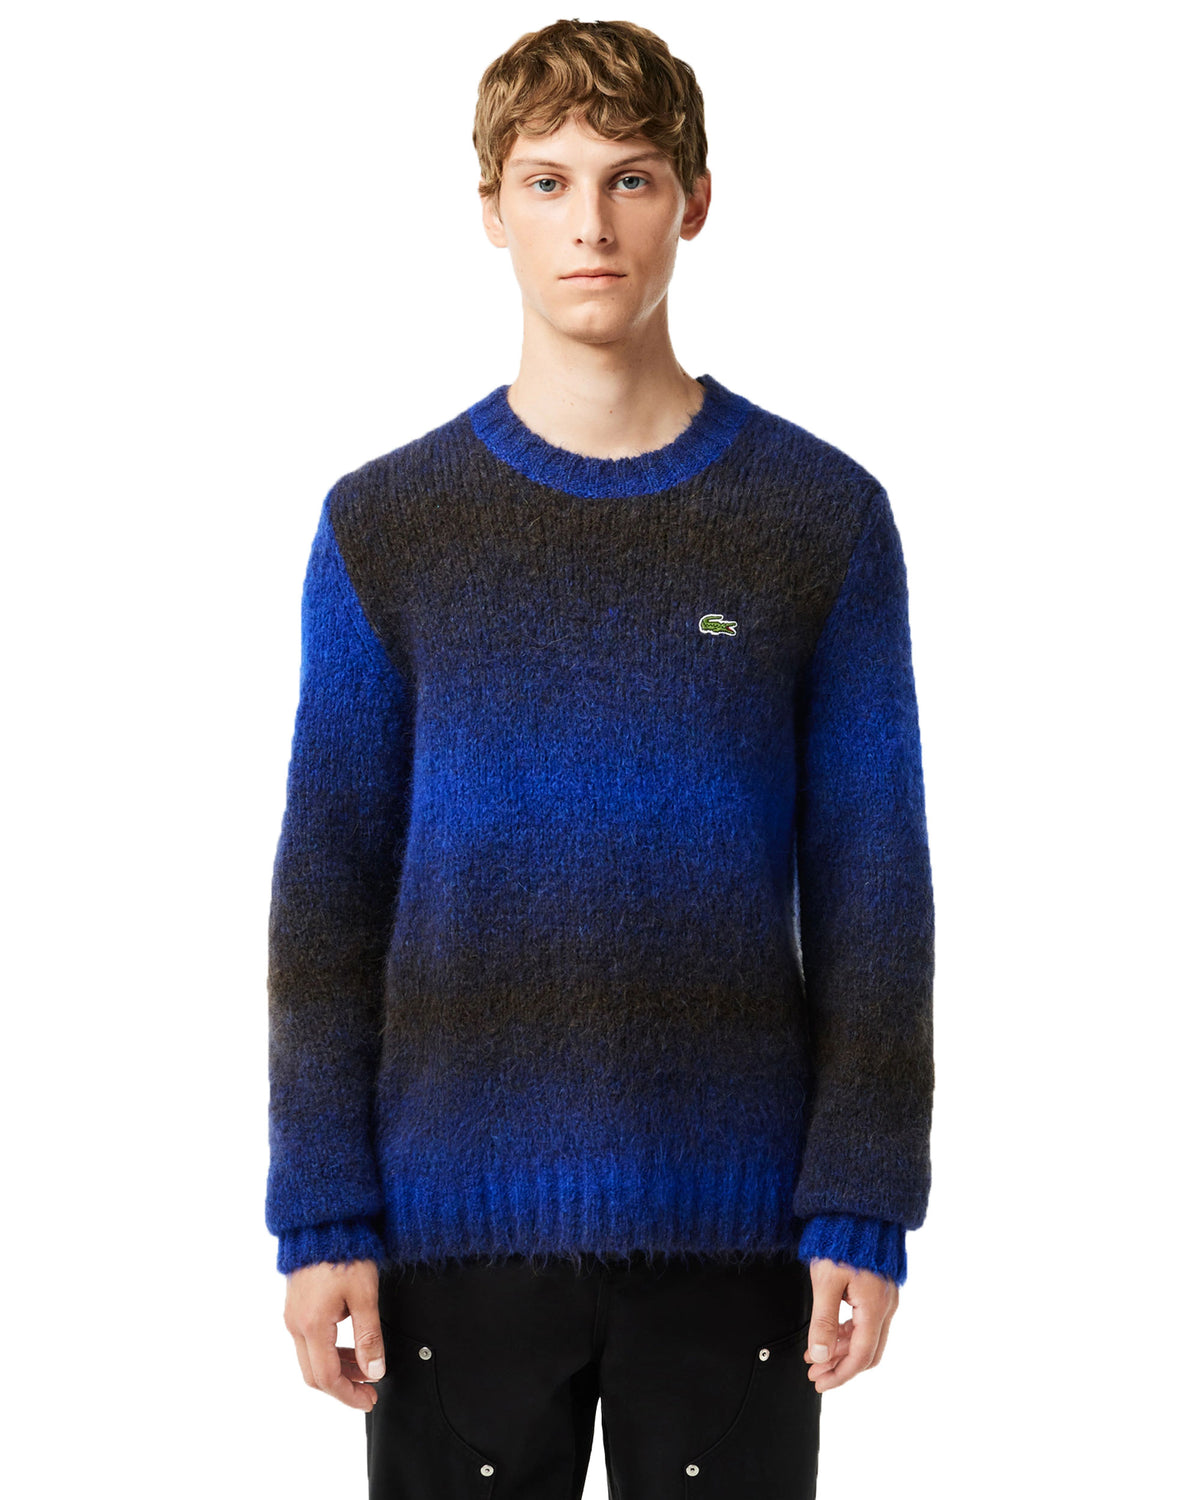 Man Sweater Alpaca Lacoste Blue